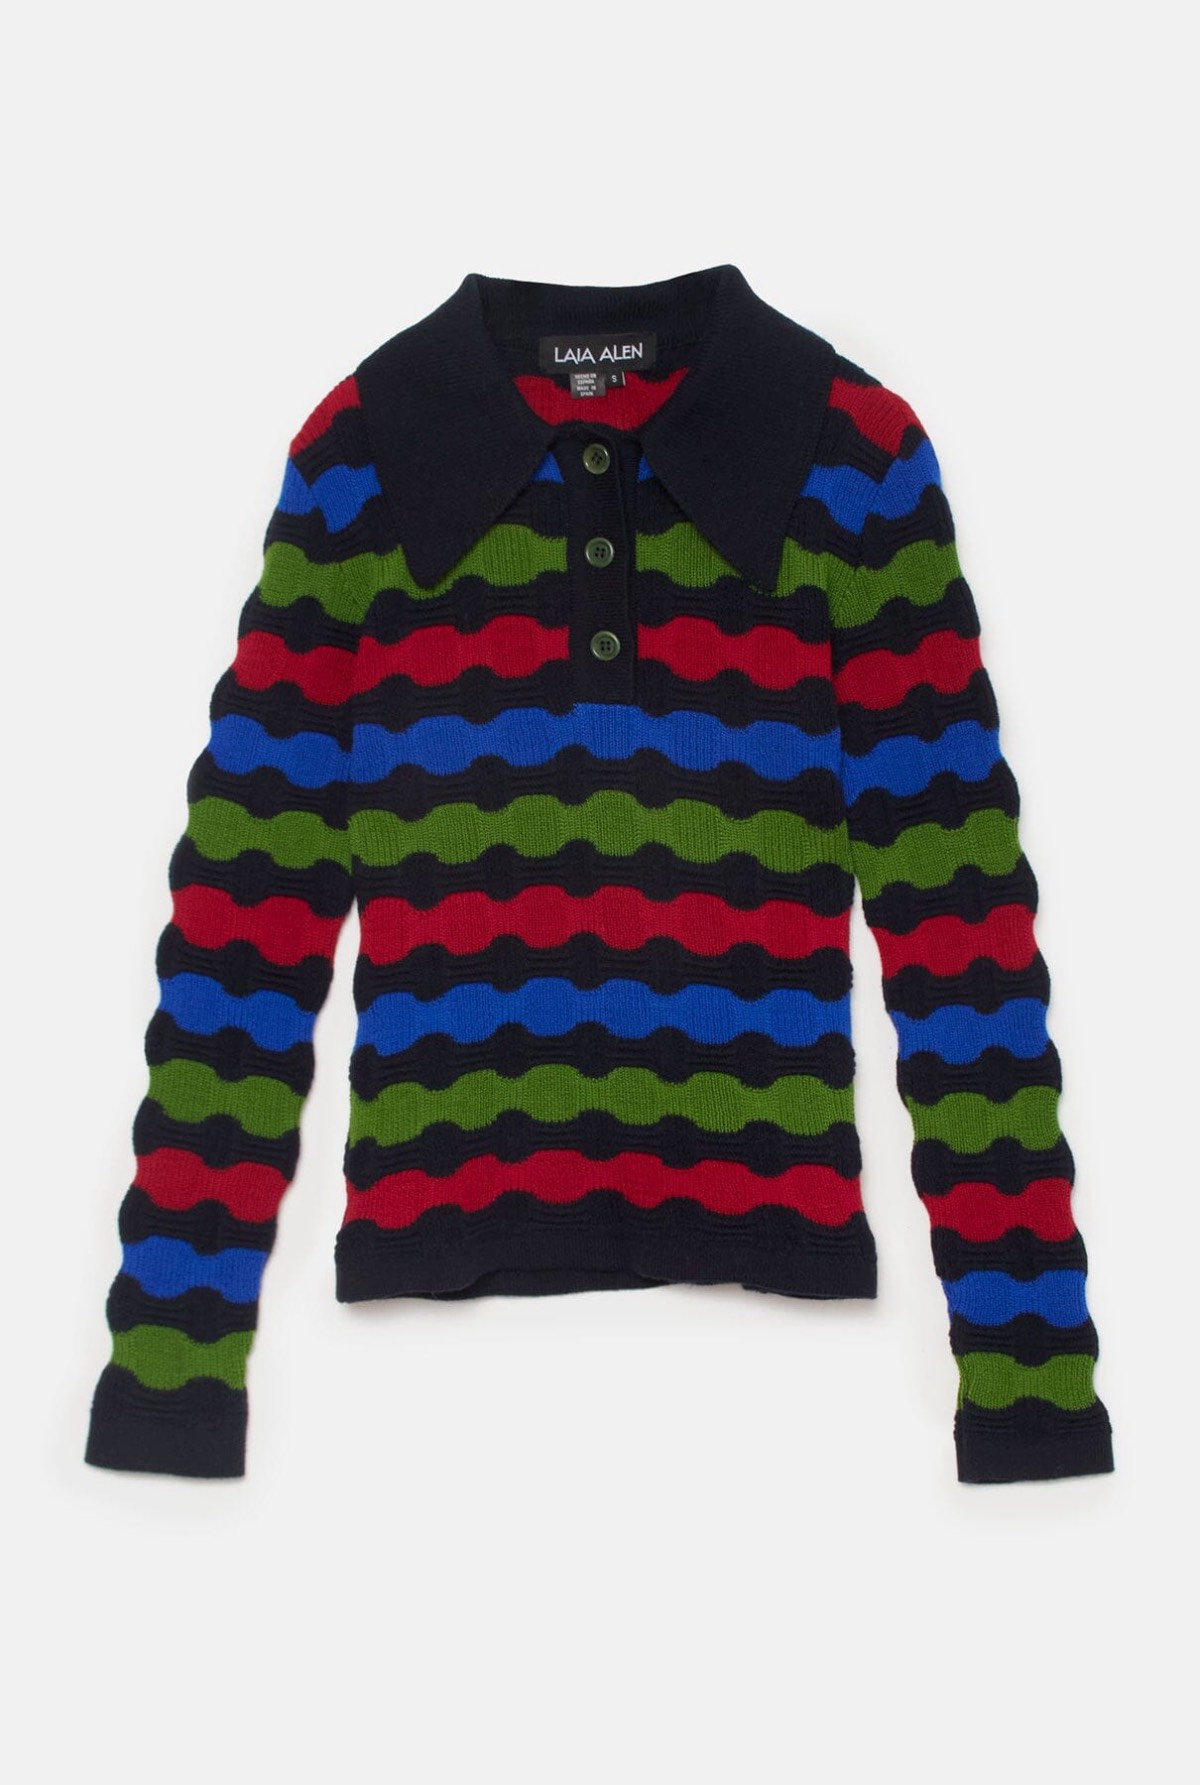 didi-polo-sweaters-laia-alen-454019